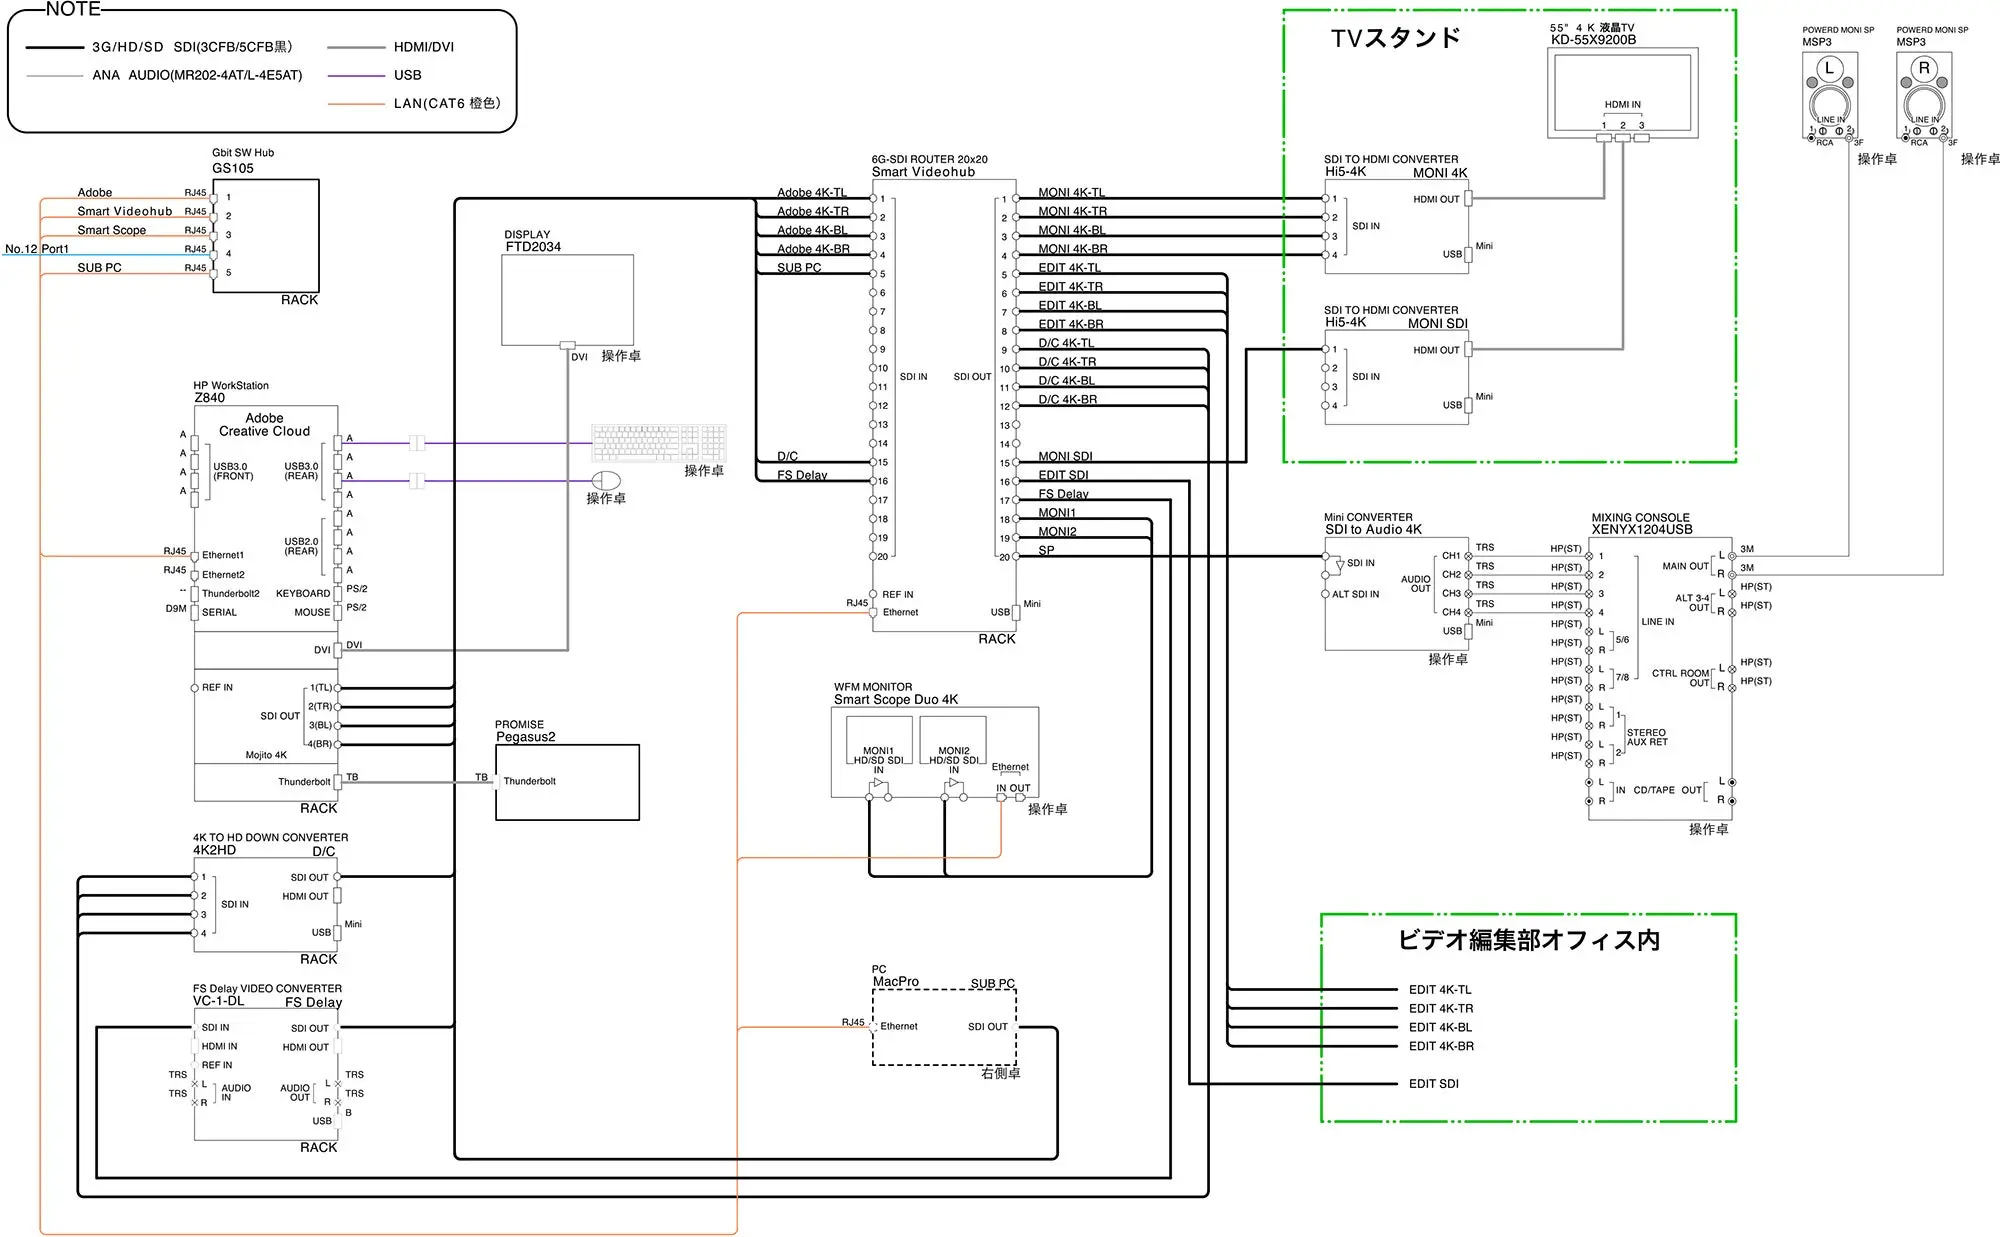 共同テレビジョン4K60p 編集室システム系統図（施工：Too）